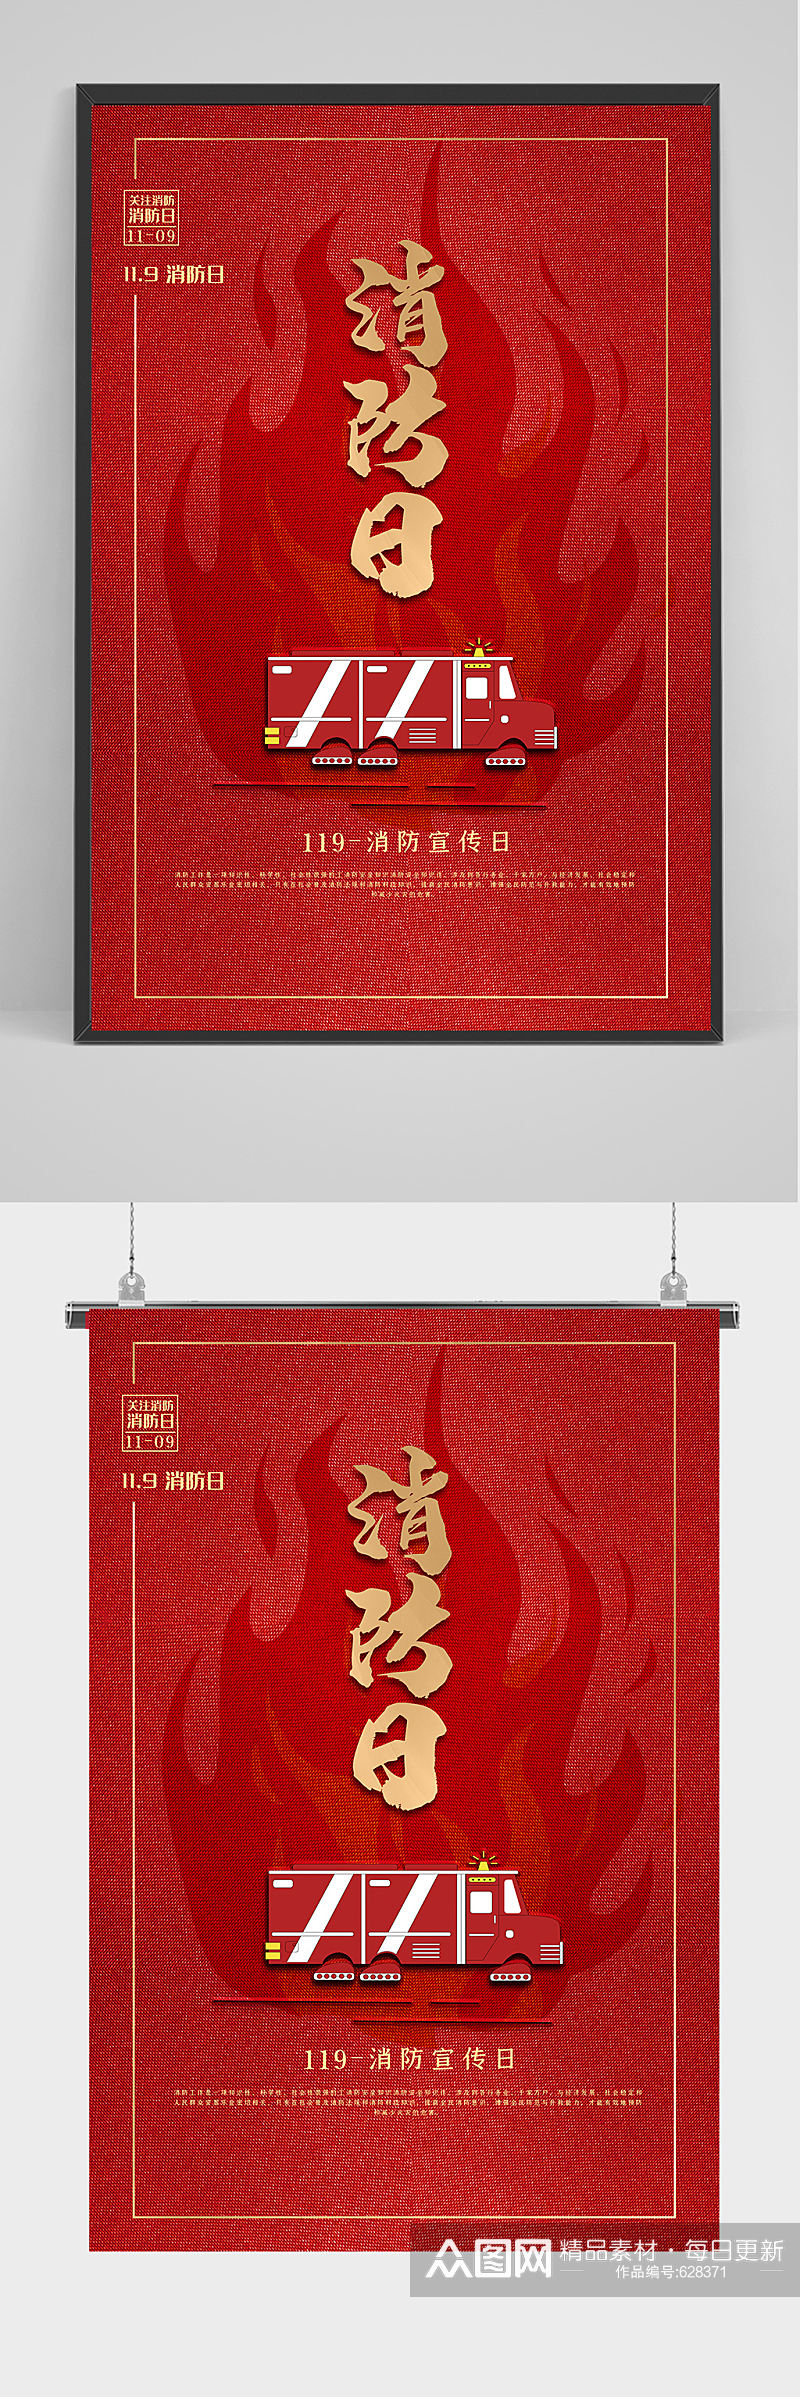 红色消防日海报设计素材